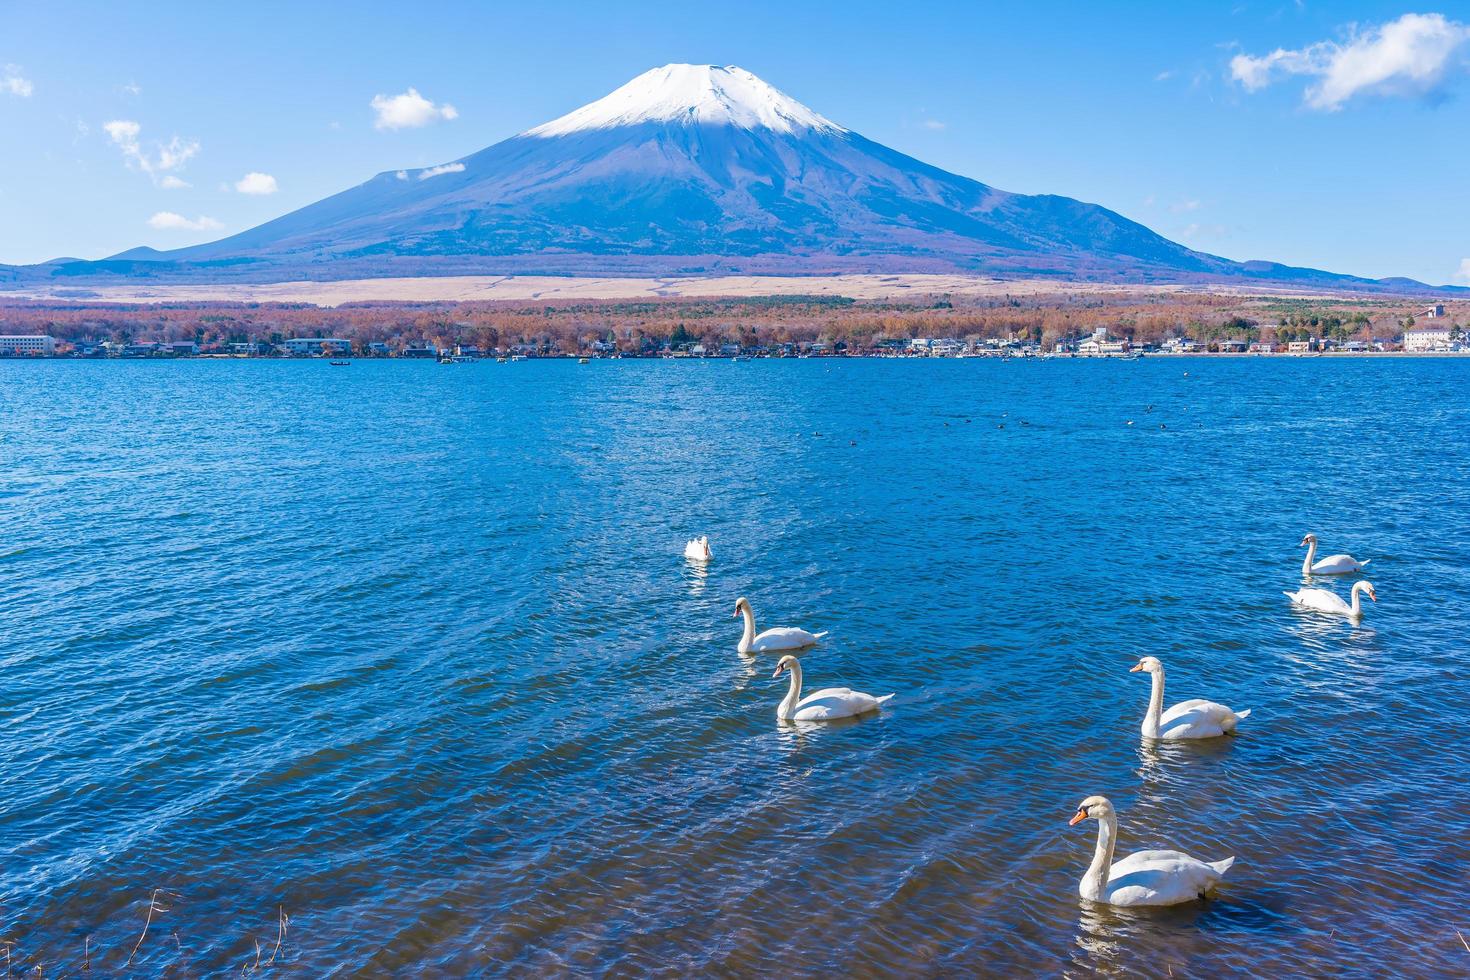 Mt. Fuji and Lake Yamanakako in Japan photo